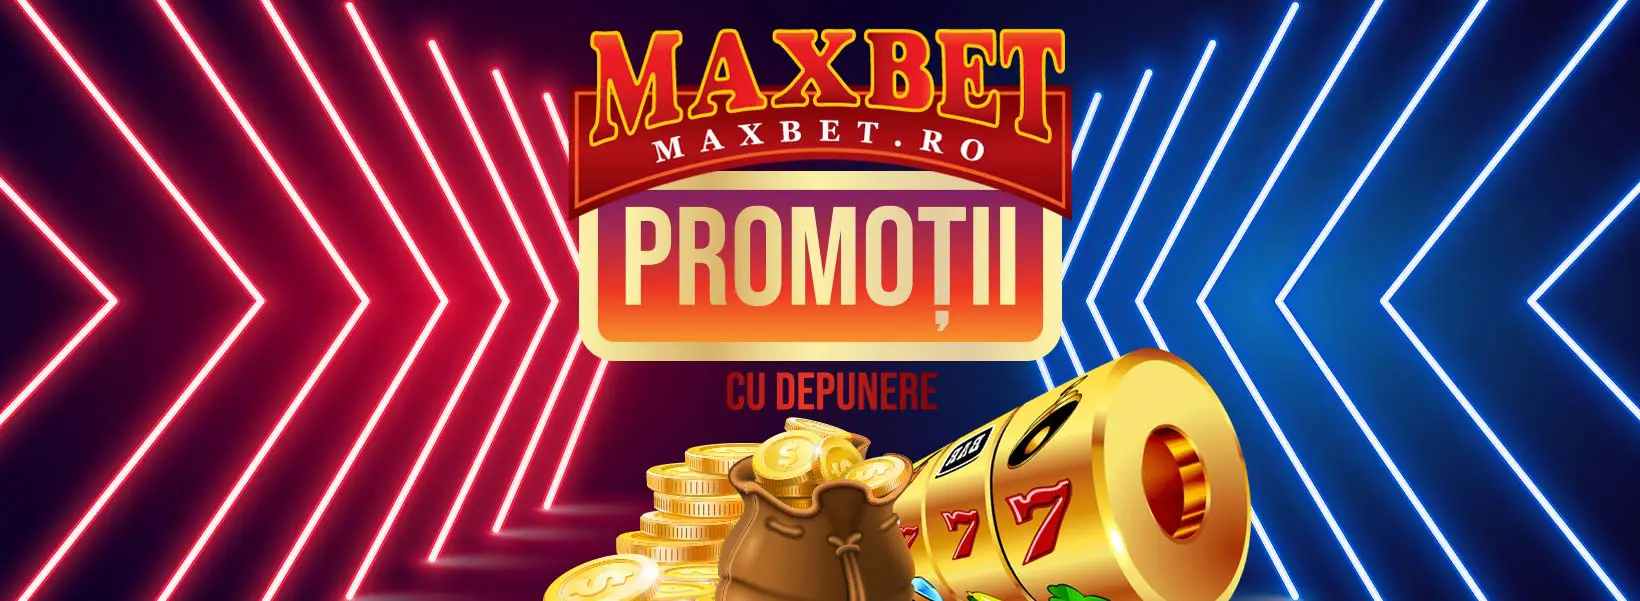 promotii maxbet cu depunere logo